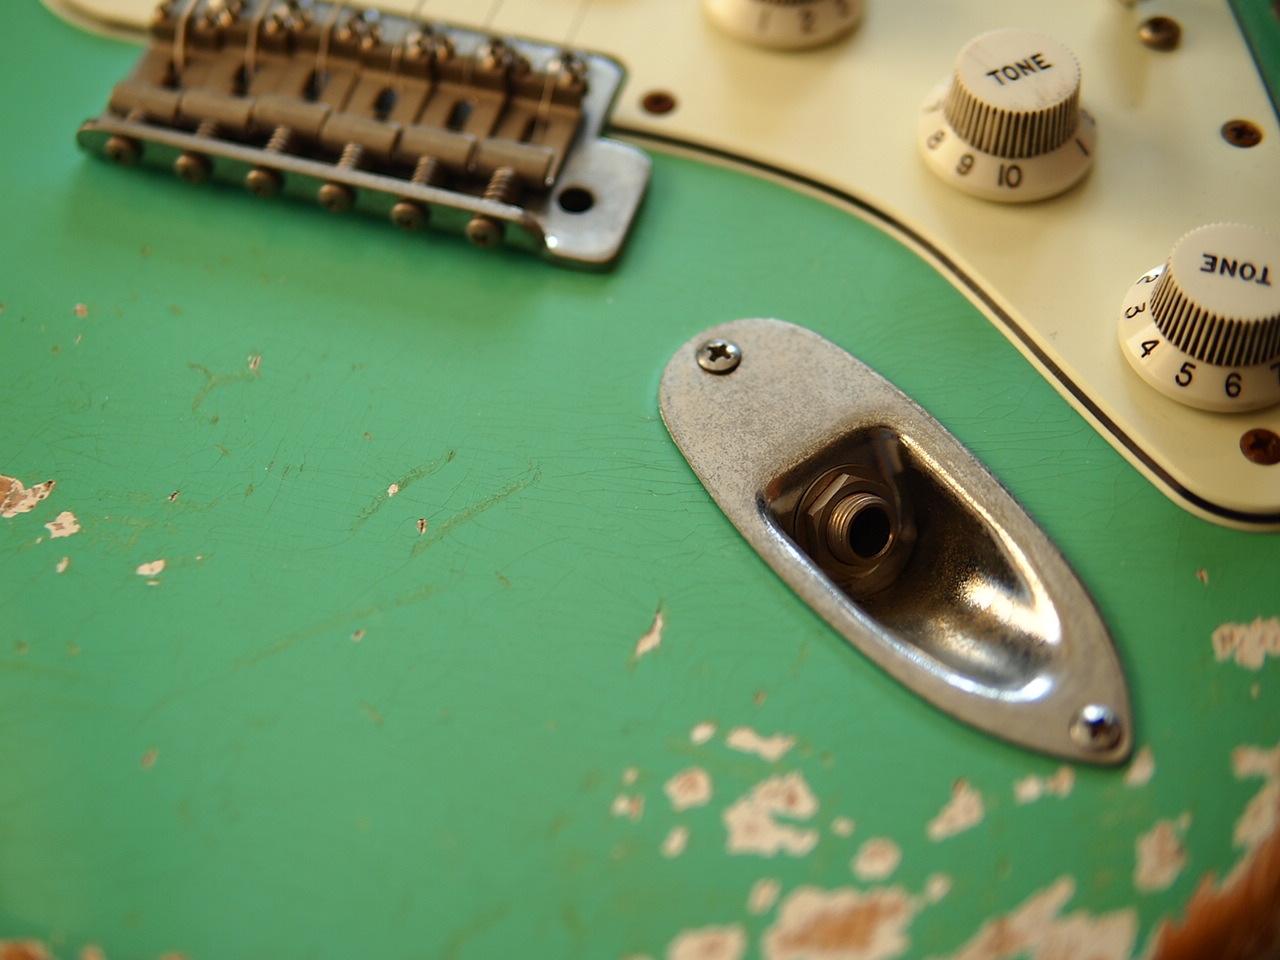 Fender 50's Stratocaster MJT Surf Green